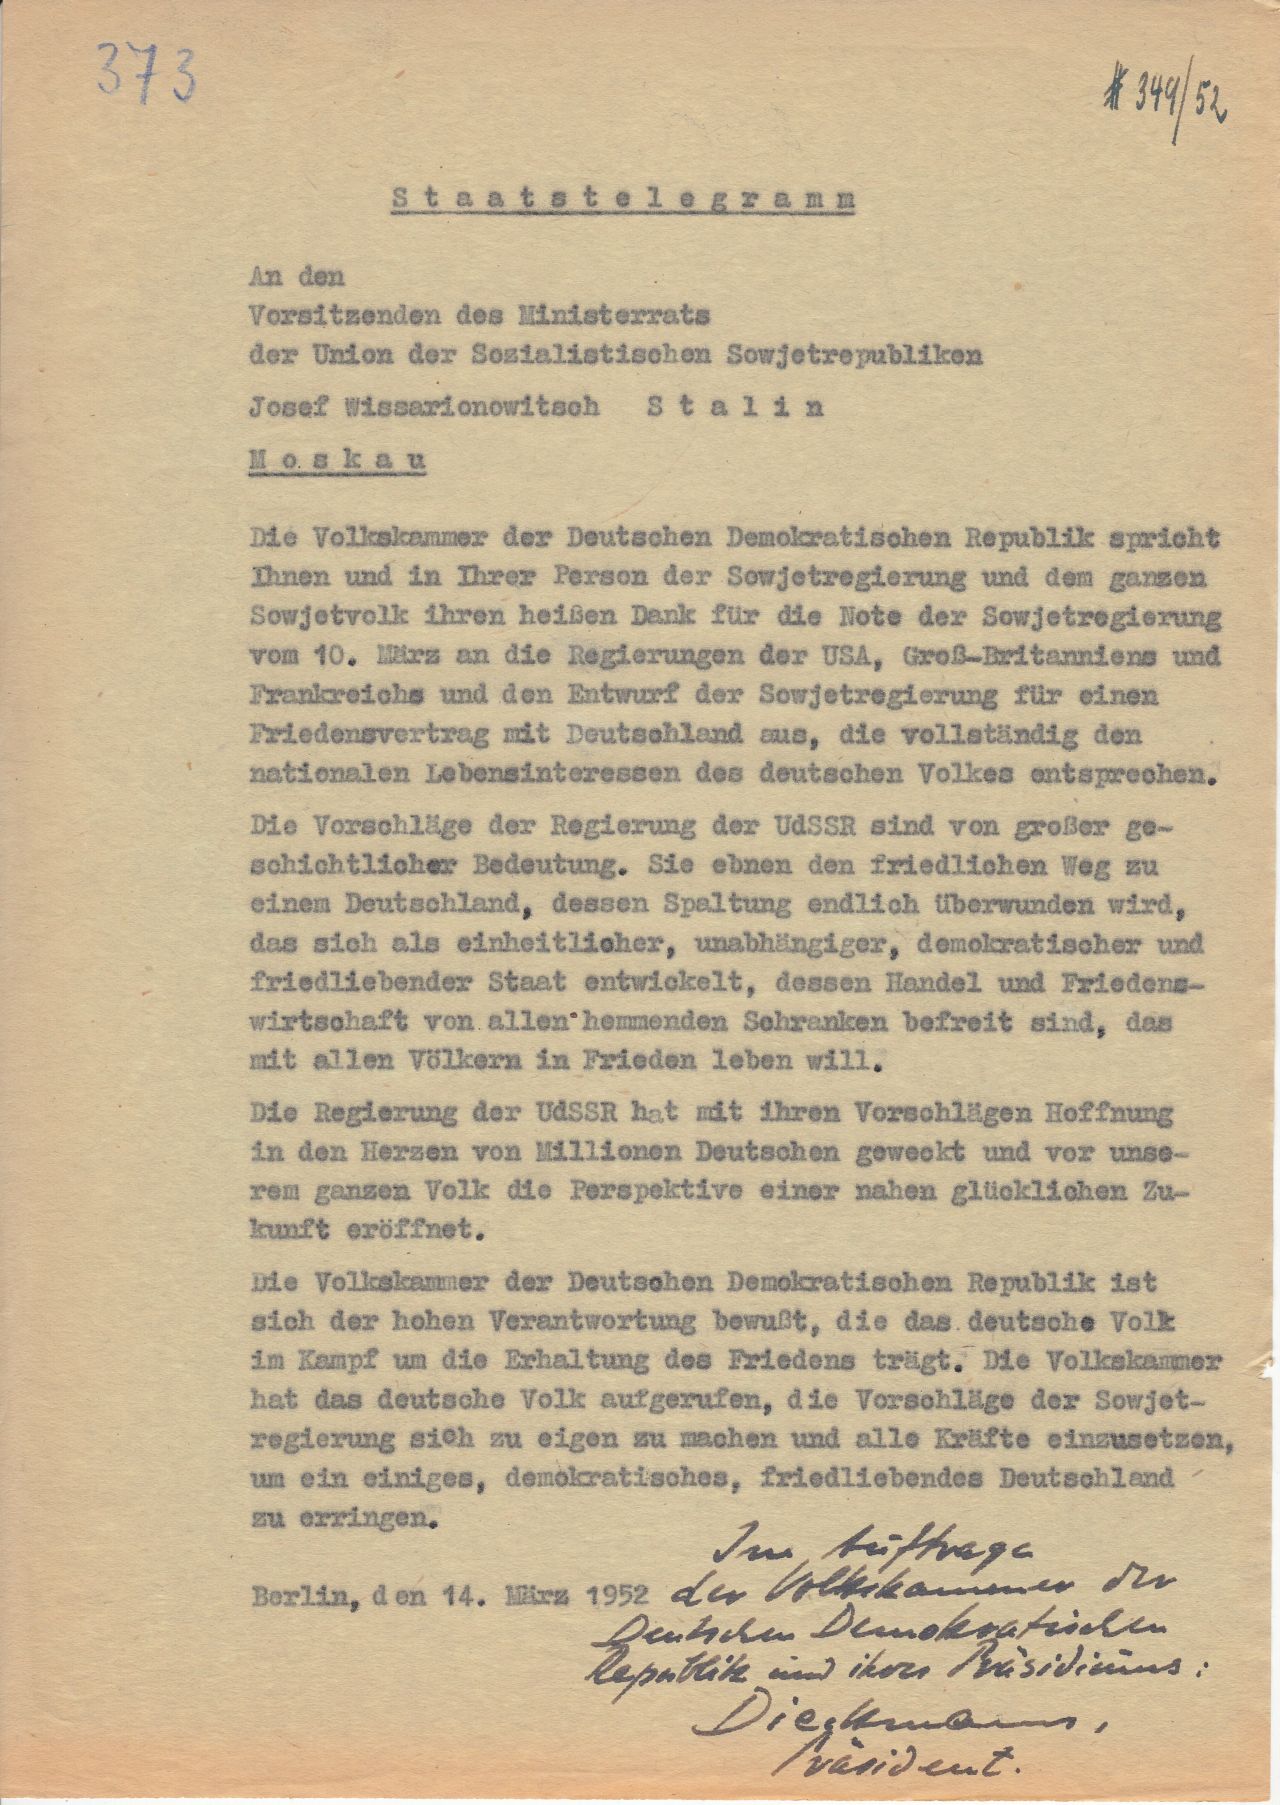 Die Volskammer der DDR dankt Josef Stalin und der Sowjetregierung für ihre Note vom 10. März 1952